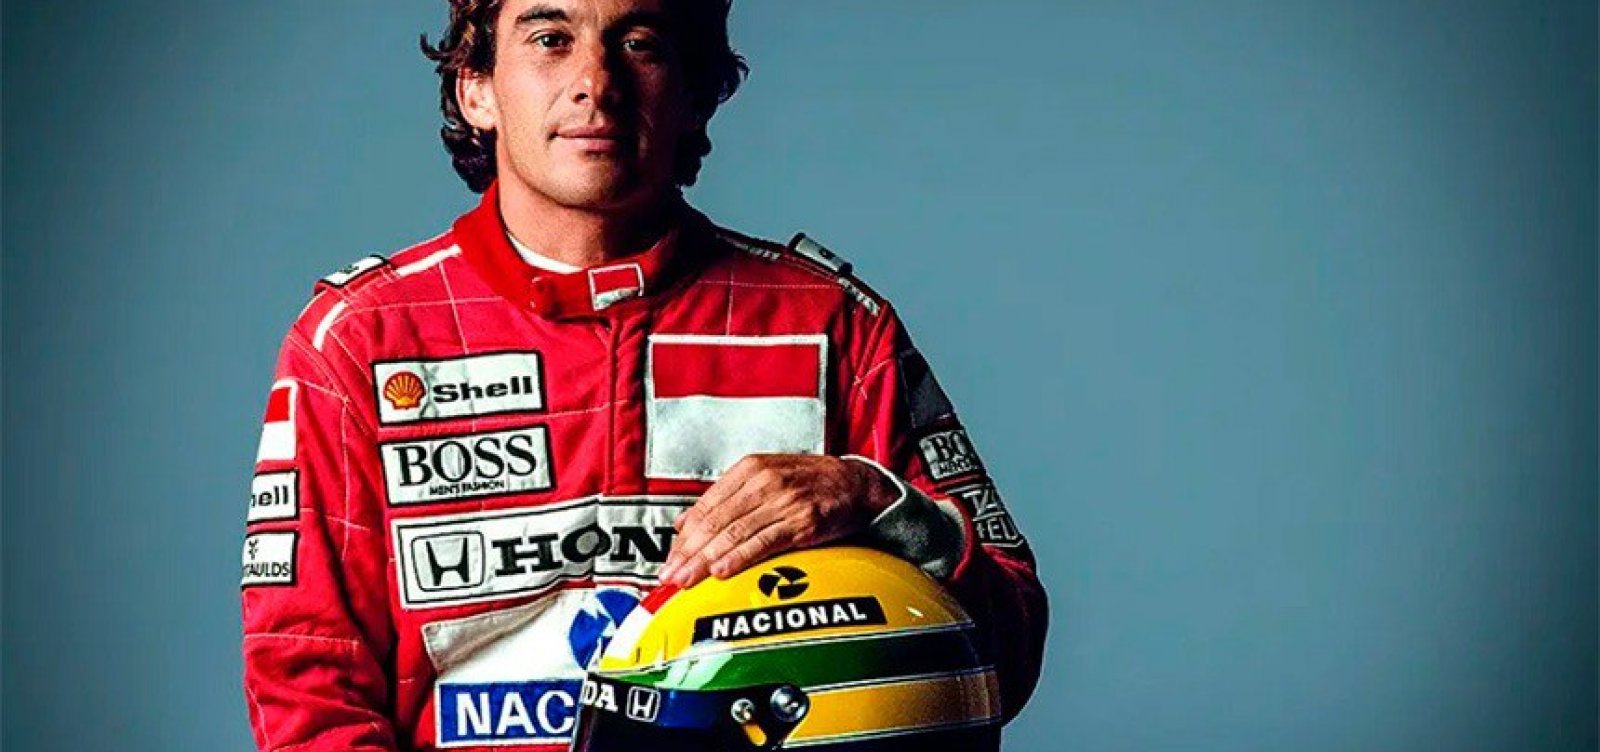 Nos 30 anos da morte de Senna, Globoplay lançará documentário sobre piloto 